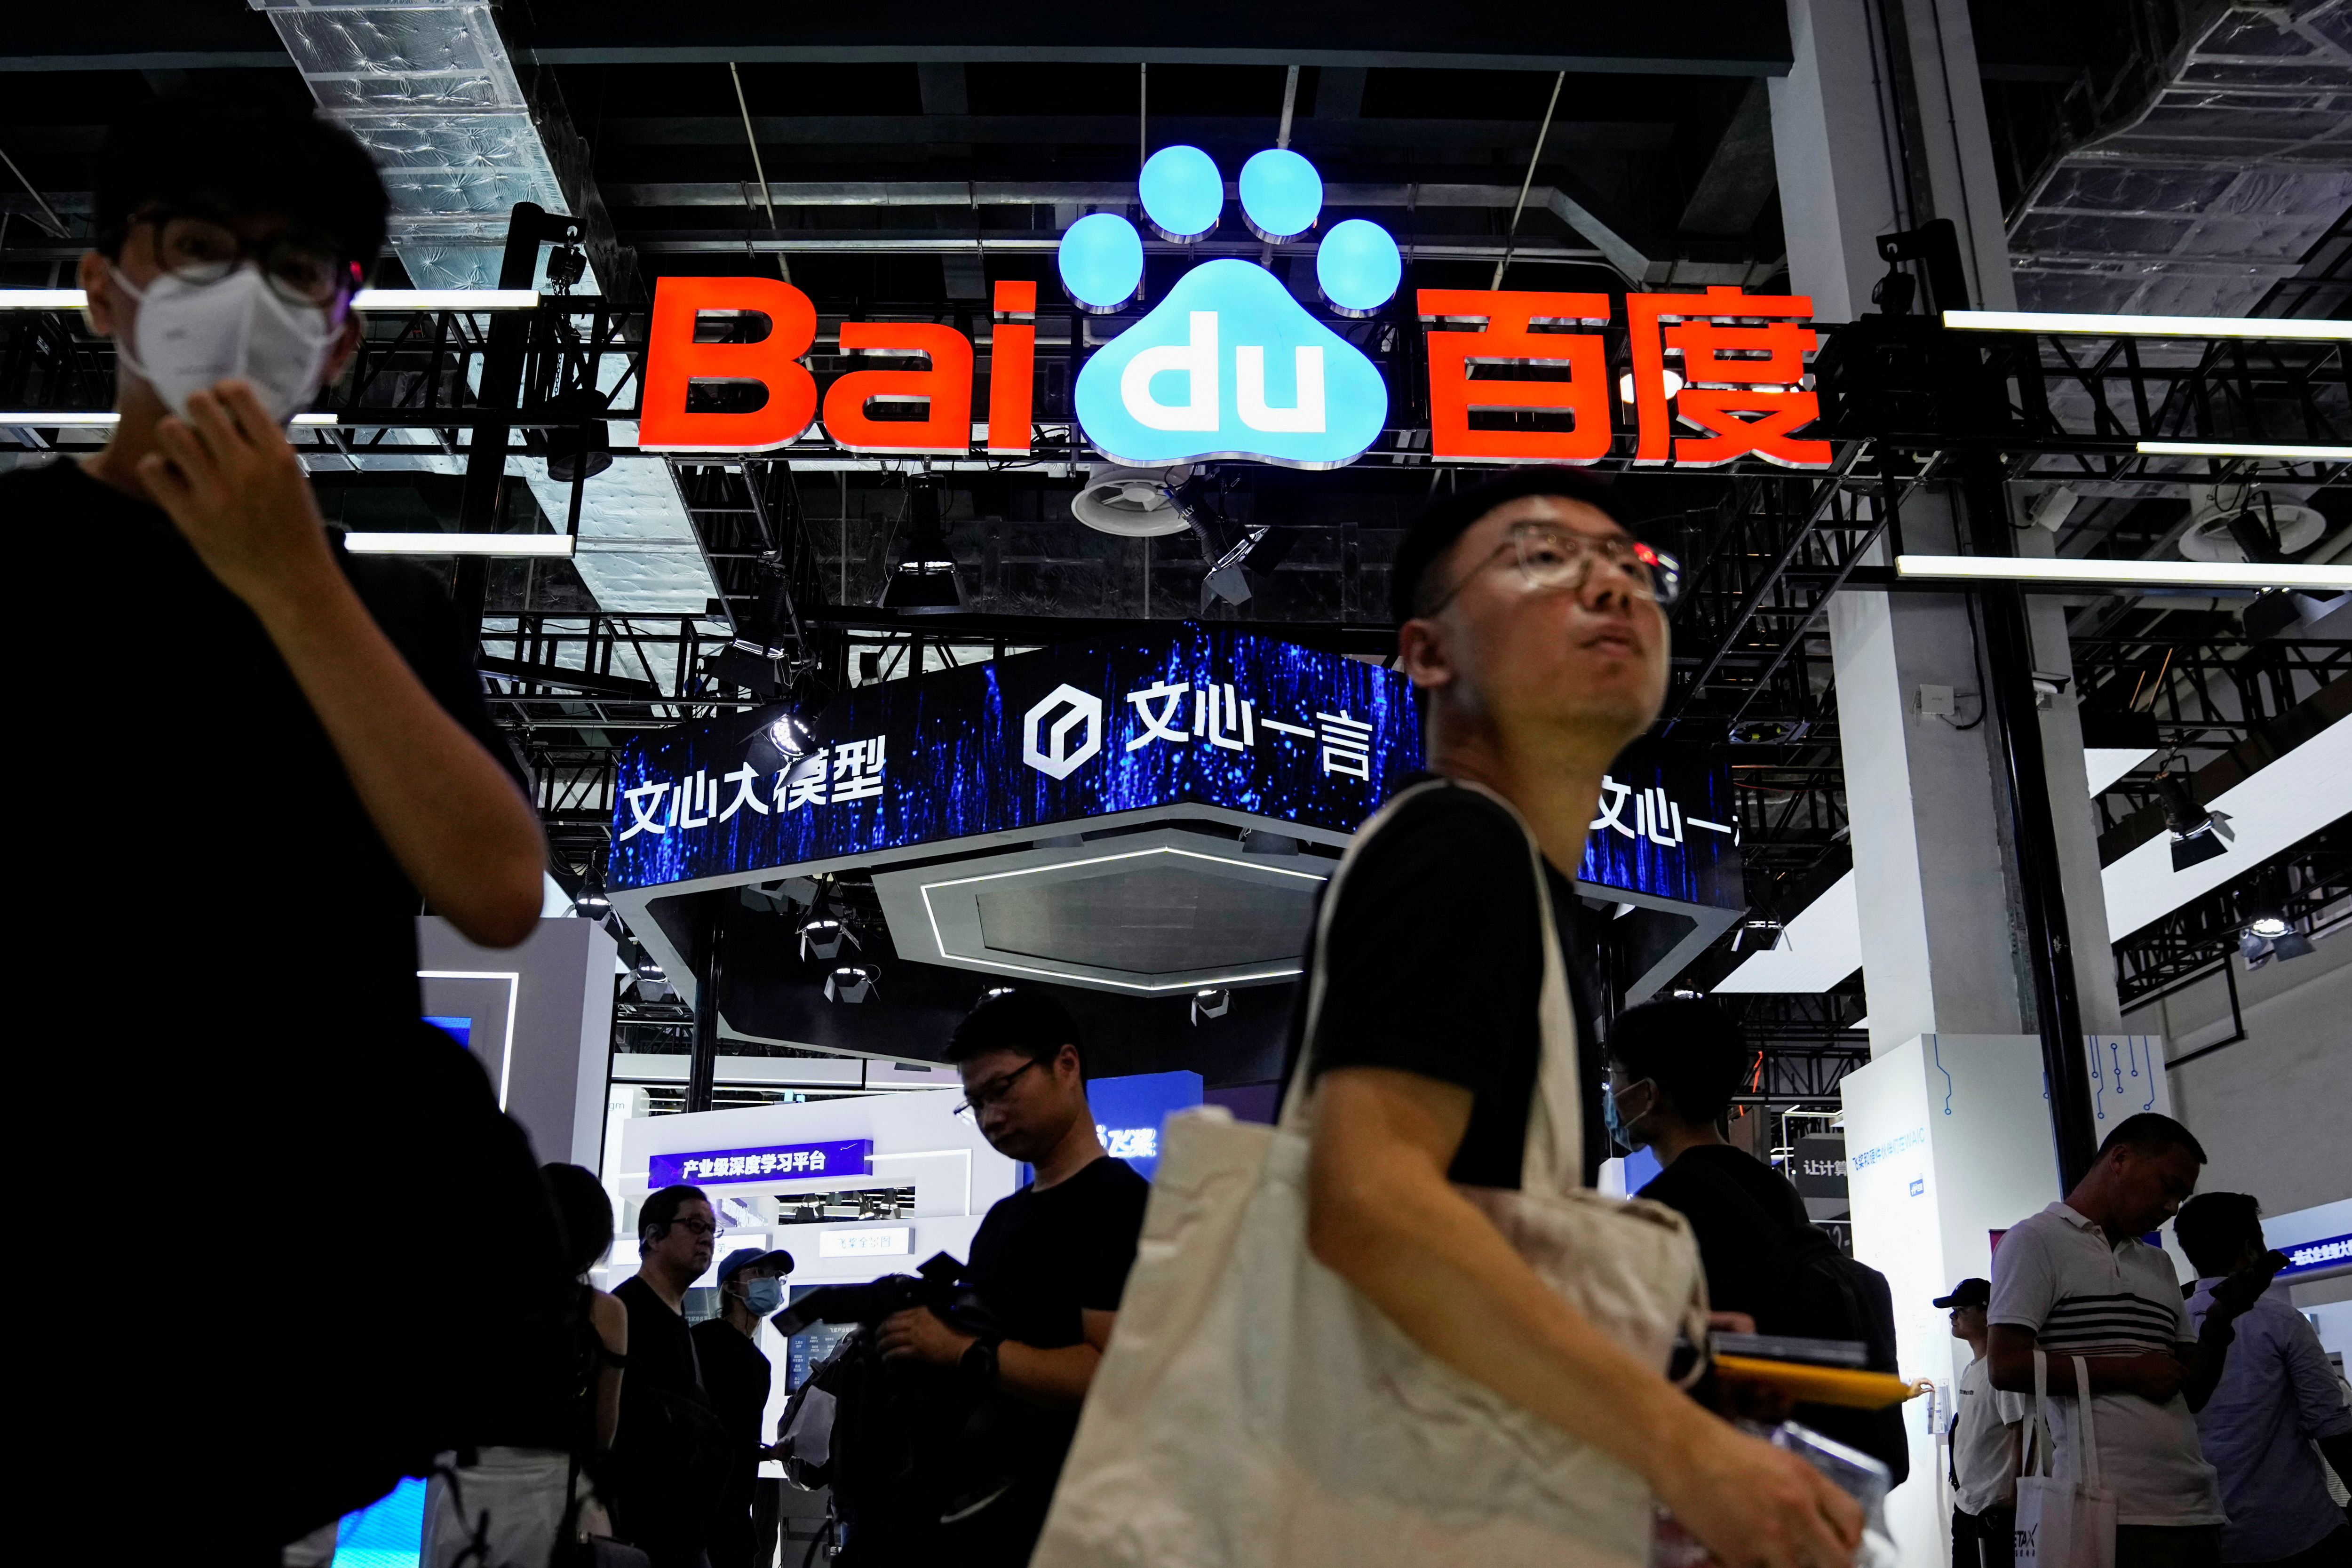 Le chatbot Ernie de Baidu a attiré plus de 100 millions d'utilisateurs